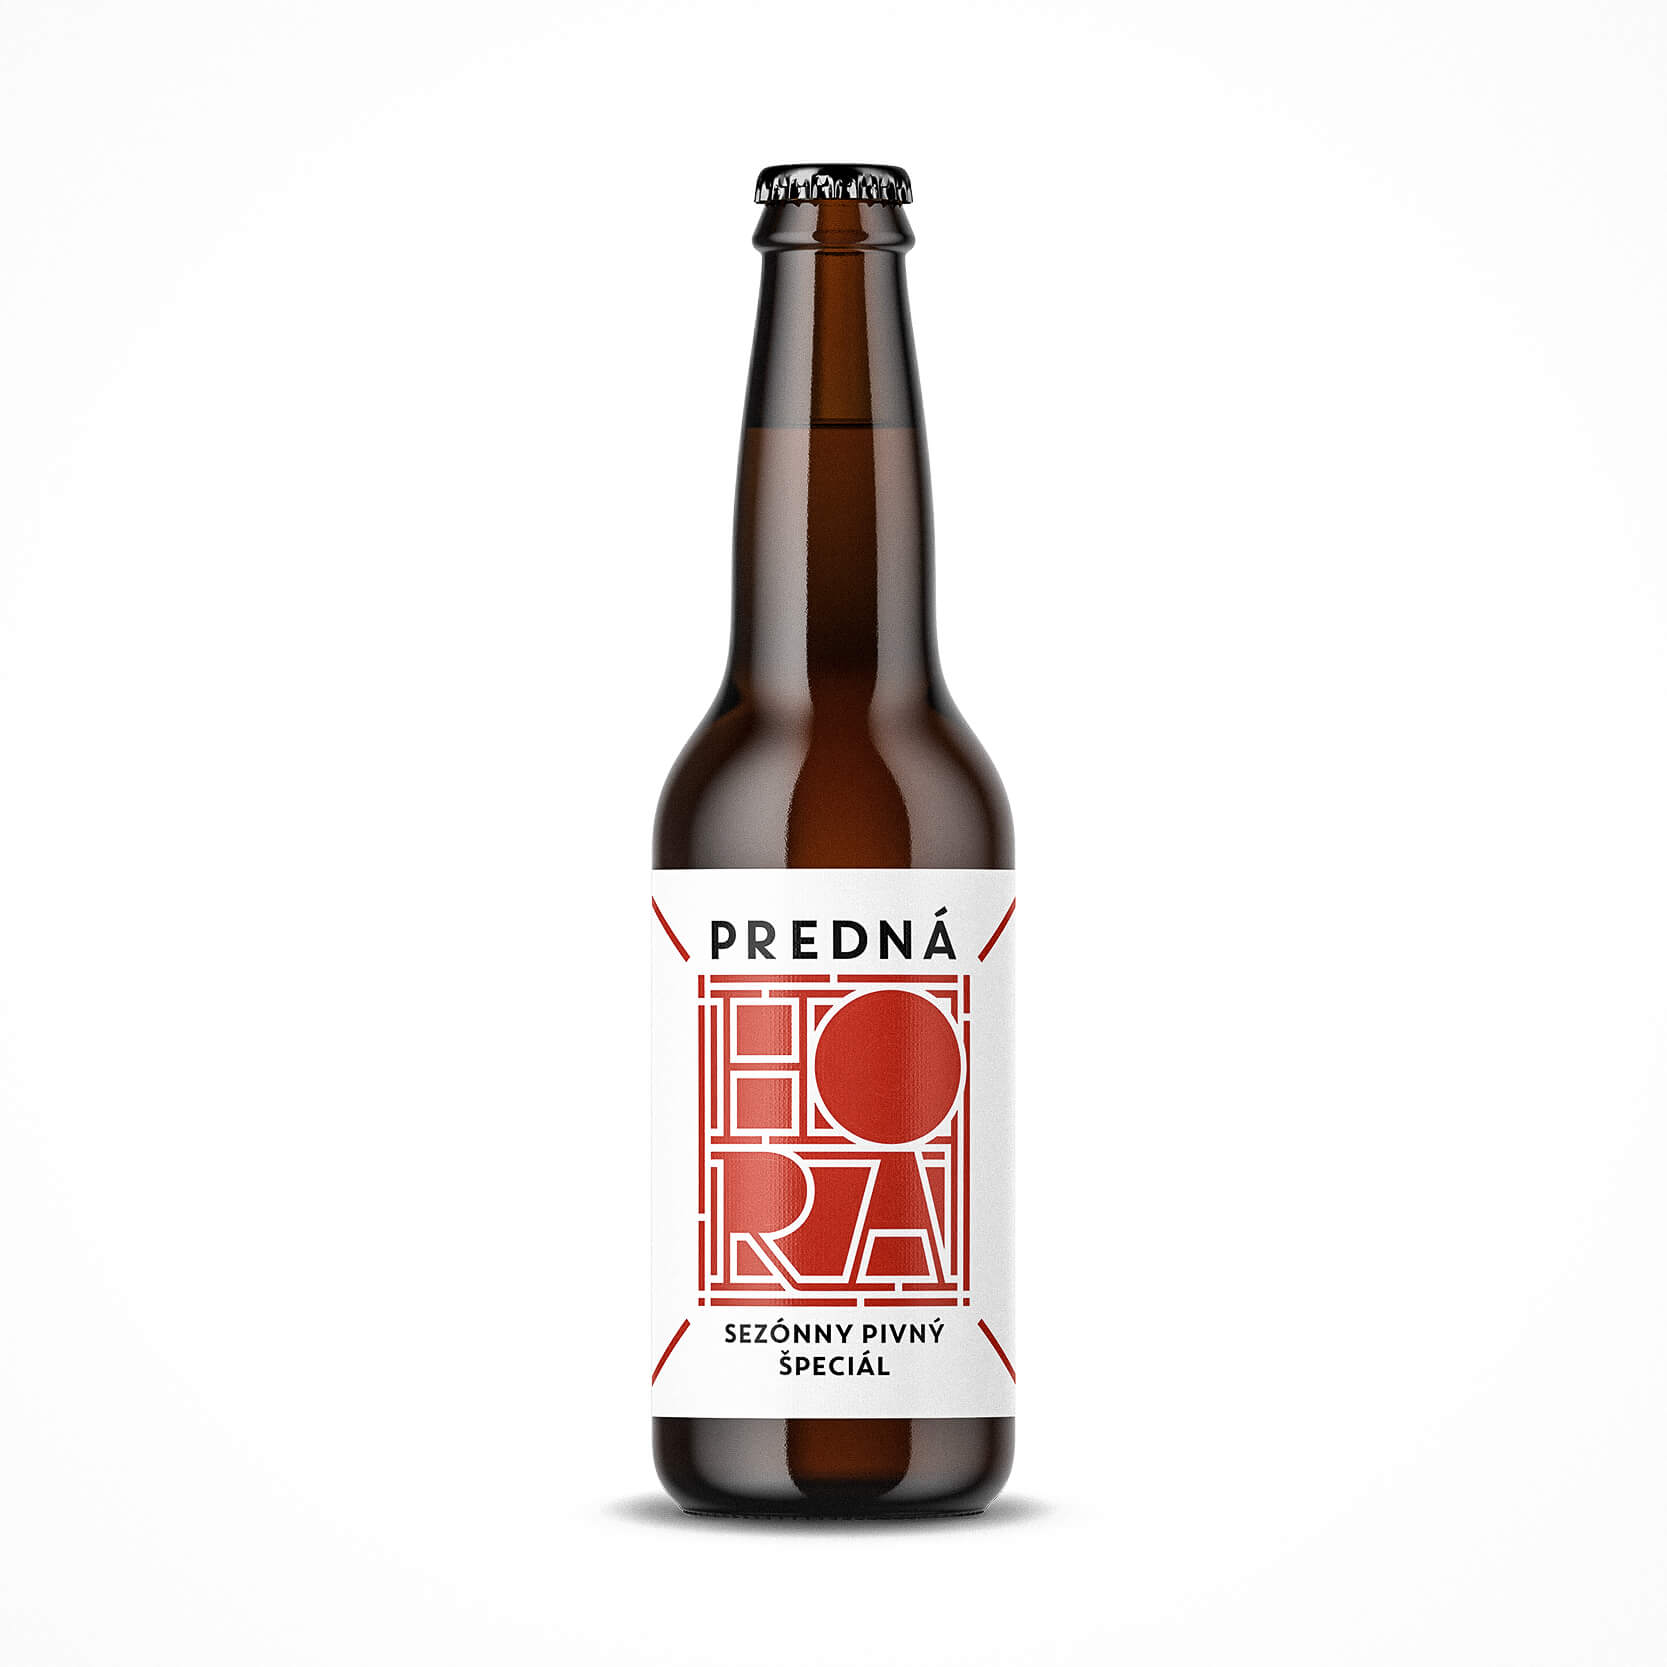 Etiketa na pivo, obalový dizajn pivný špeciál Predná Hora